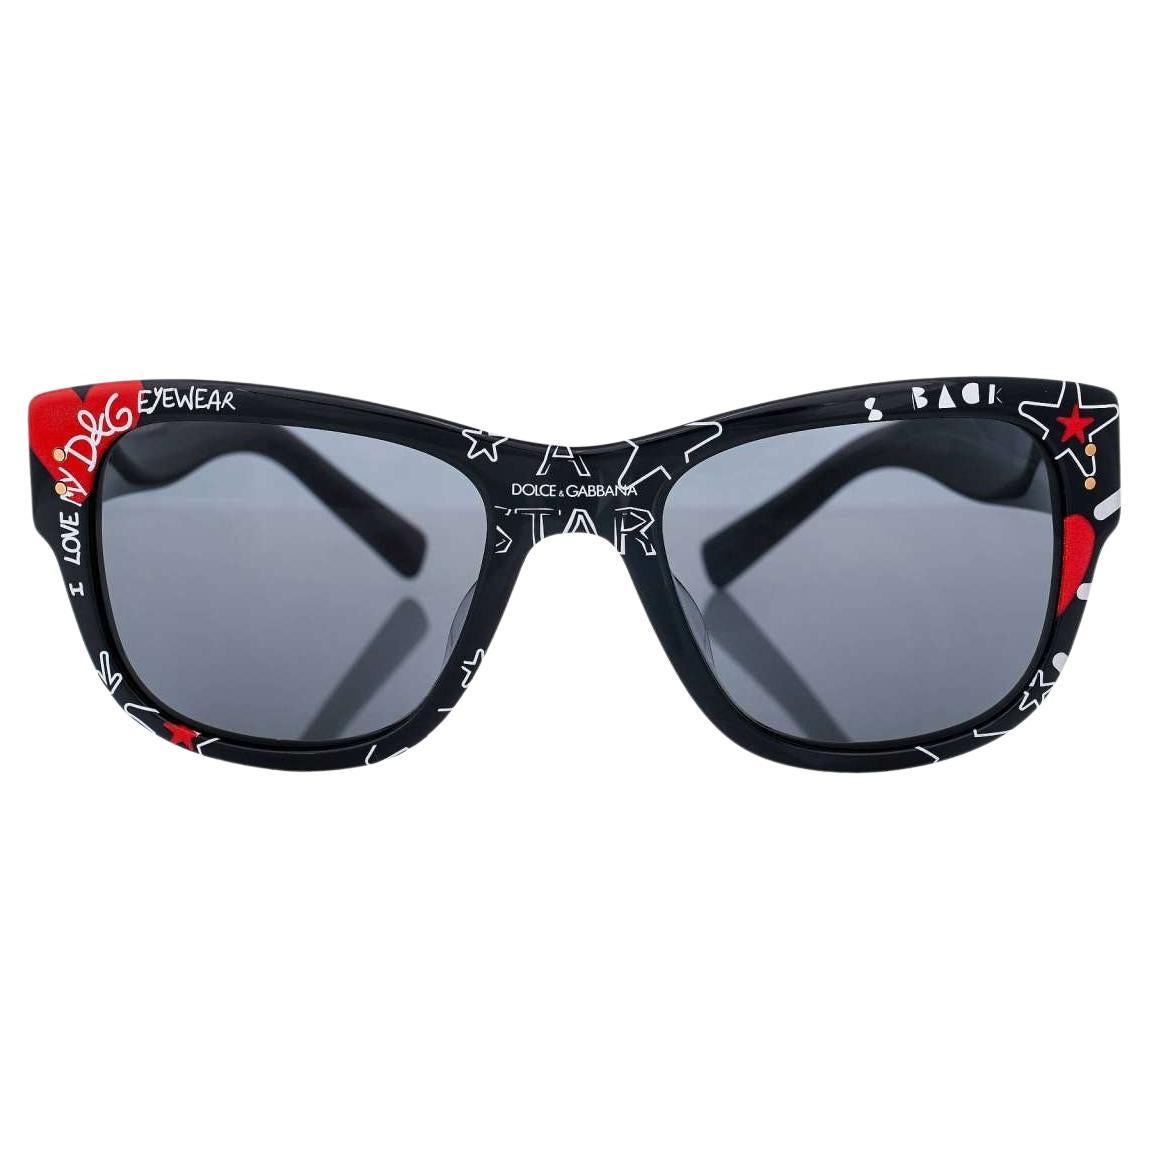 Dolce & Gabbana - Graffitti HEART STAR Sunglasses DG 4338 Black Red For Sale